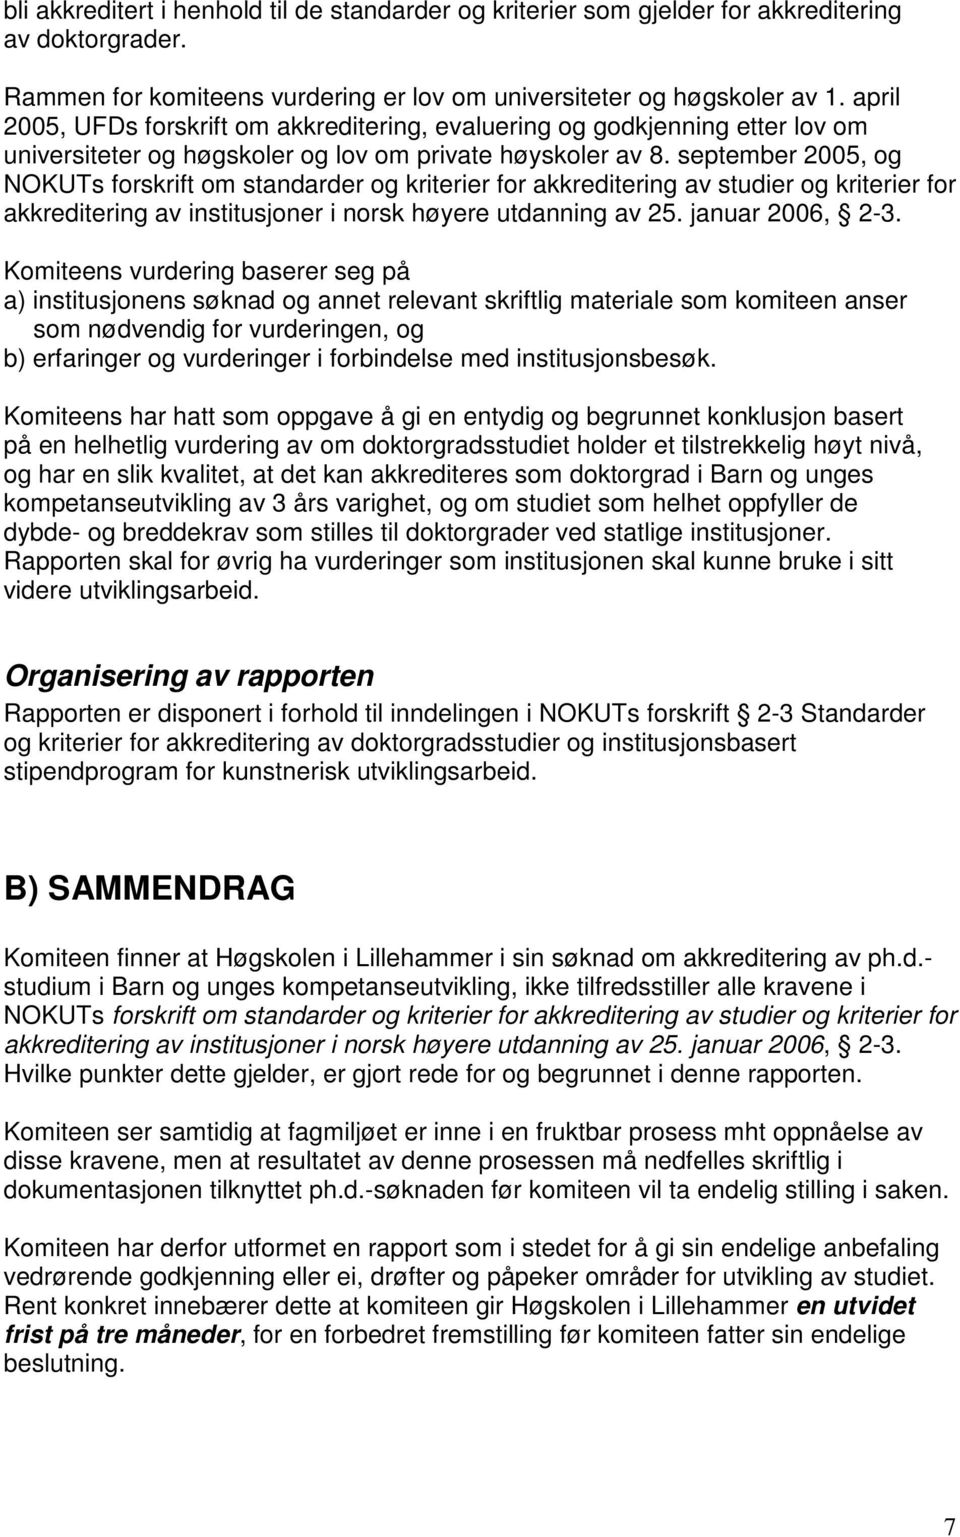 september 2005, og NOKUTs forskrift om standarder og kriterier for akkreditering av studier og kriterier for akkreditering av institusjoner i norsk høyere utdanning av 25. januar 2006, 2-3.